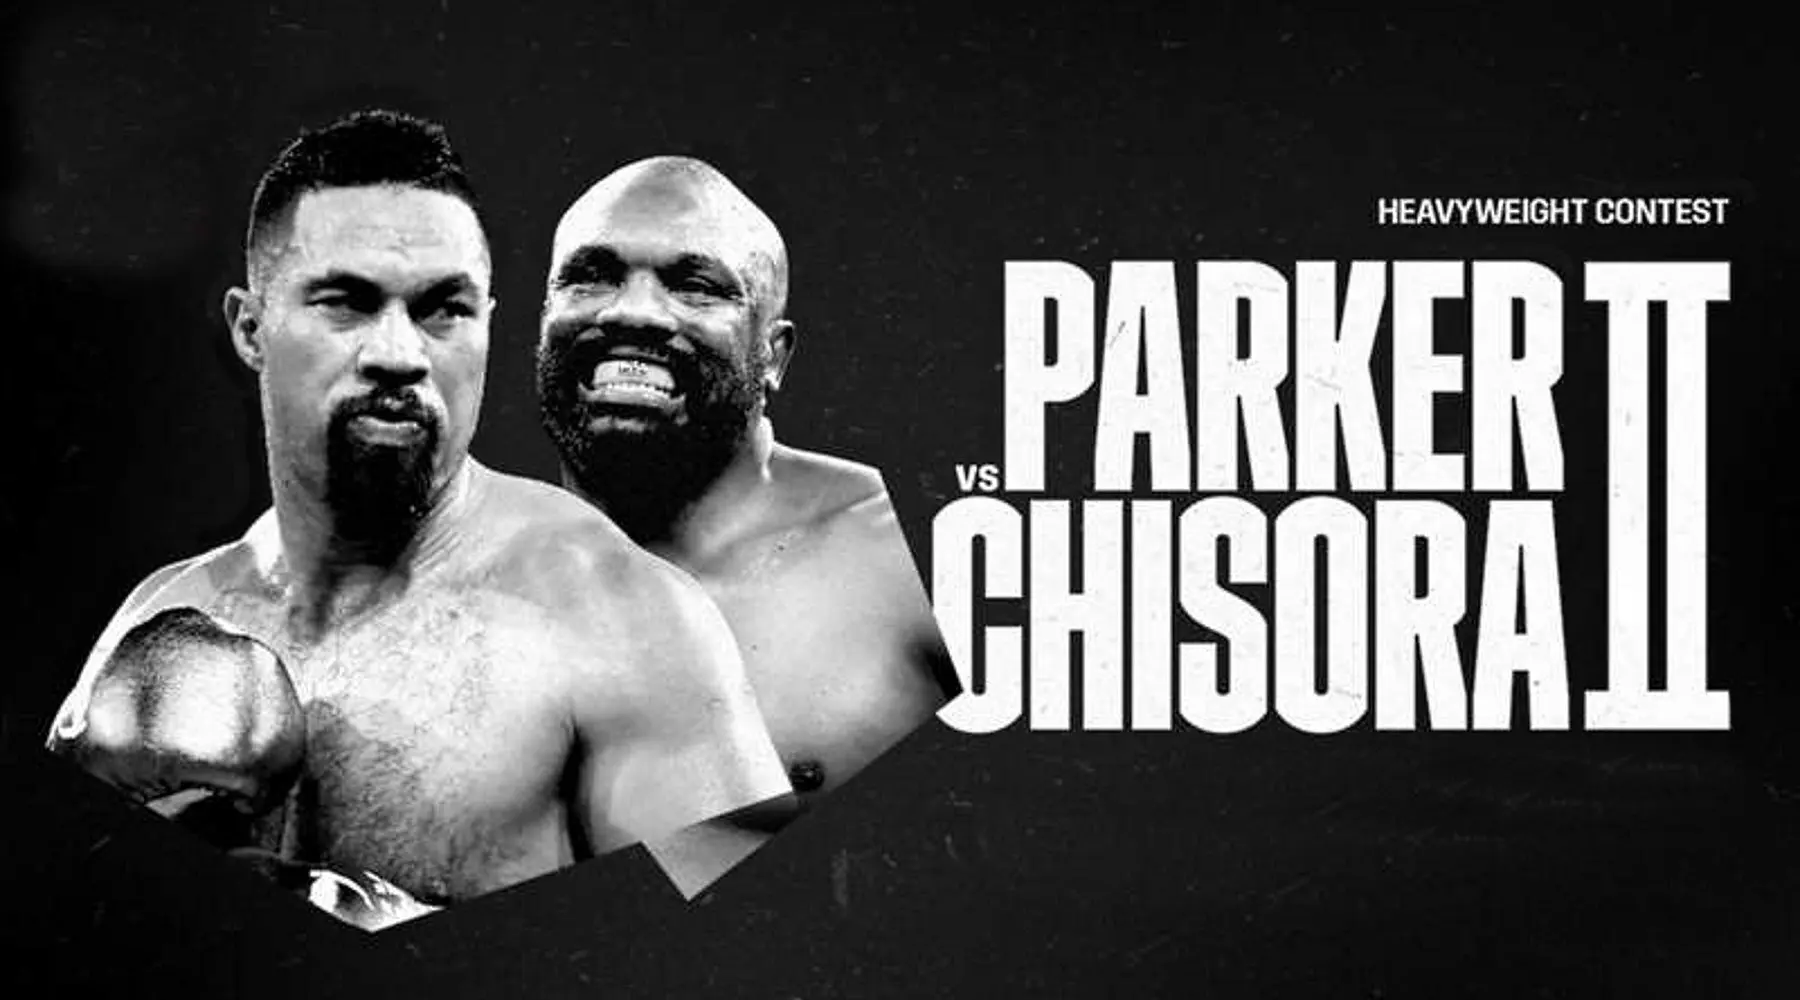 Watch Joseph Parker vs Derek Chisora 2 boxing live online in Australia